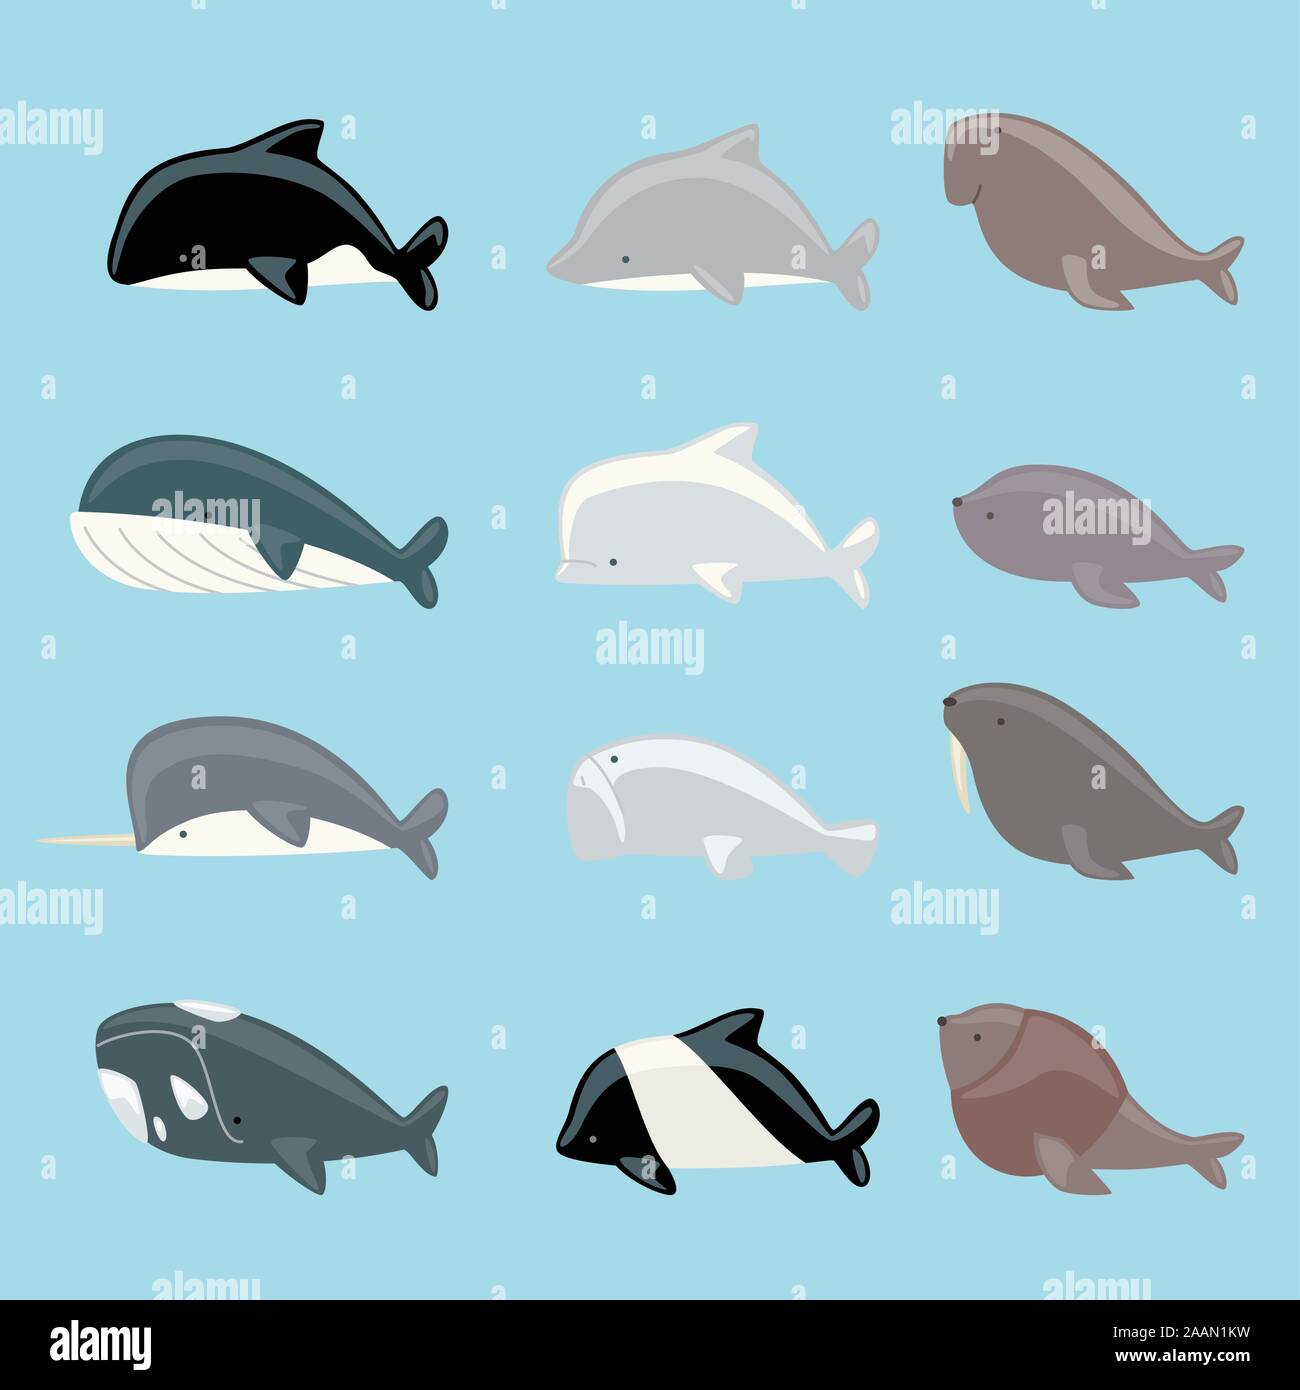 Meeressäuger Ikonensammlung mit Wal, Delfin, Manatee, Beluga, Killerwal, Narwal, Walross, Seelöwen, Blauwal-Vektor-Illustration. Stock Vektor